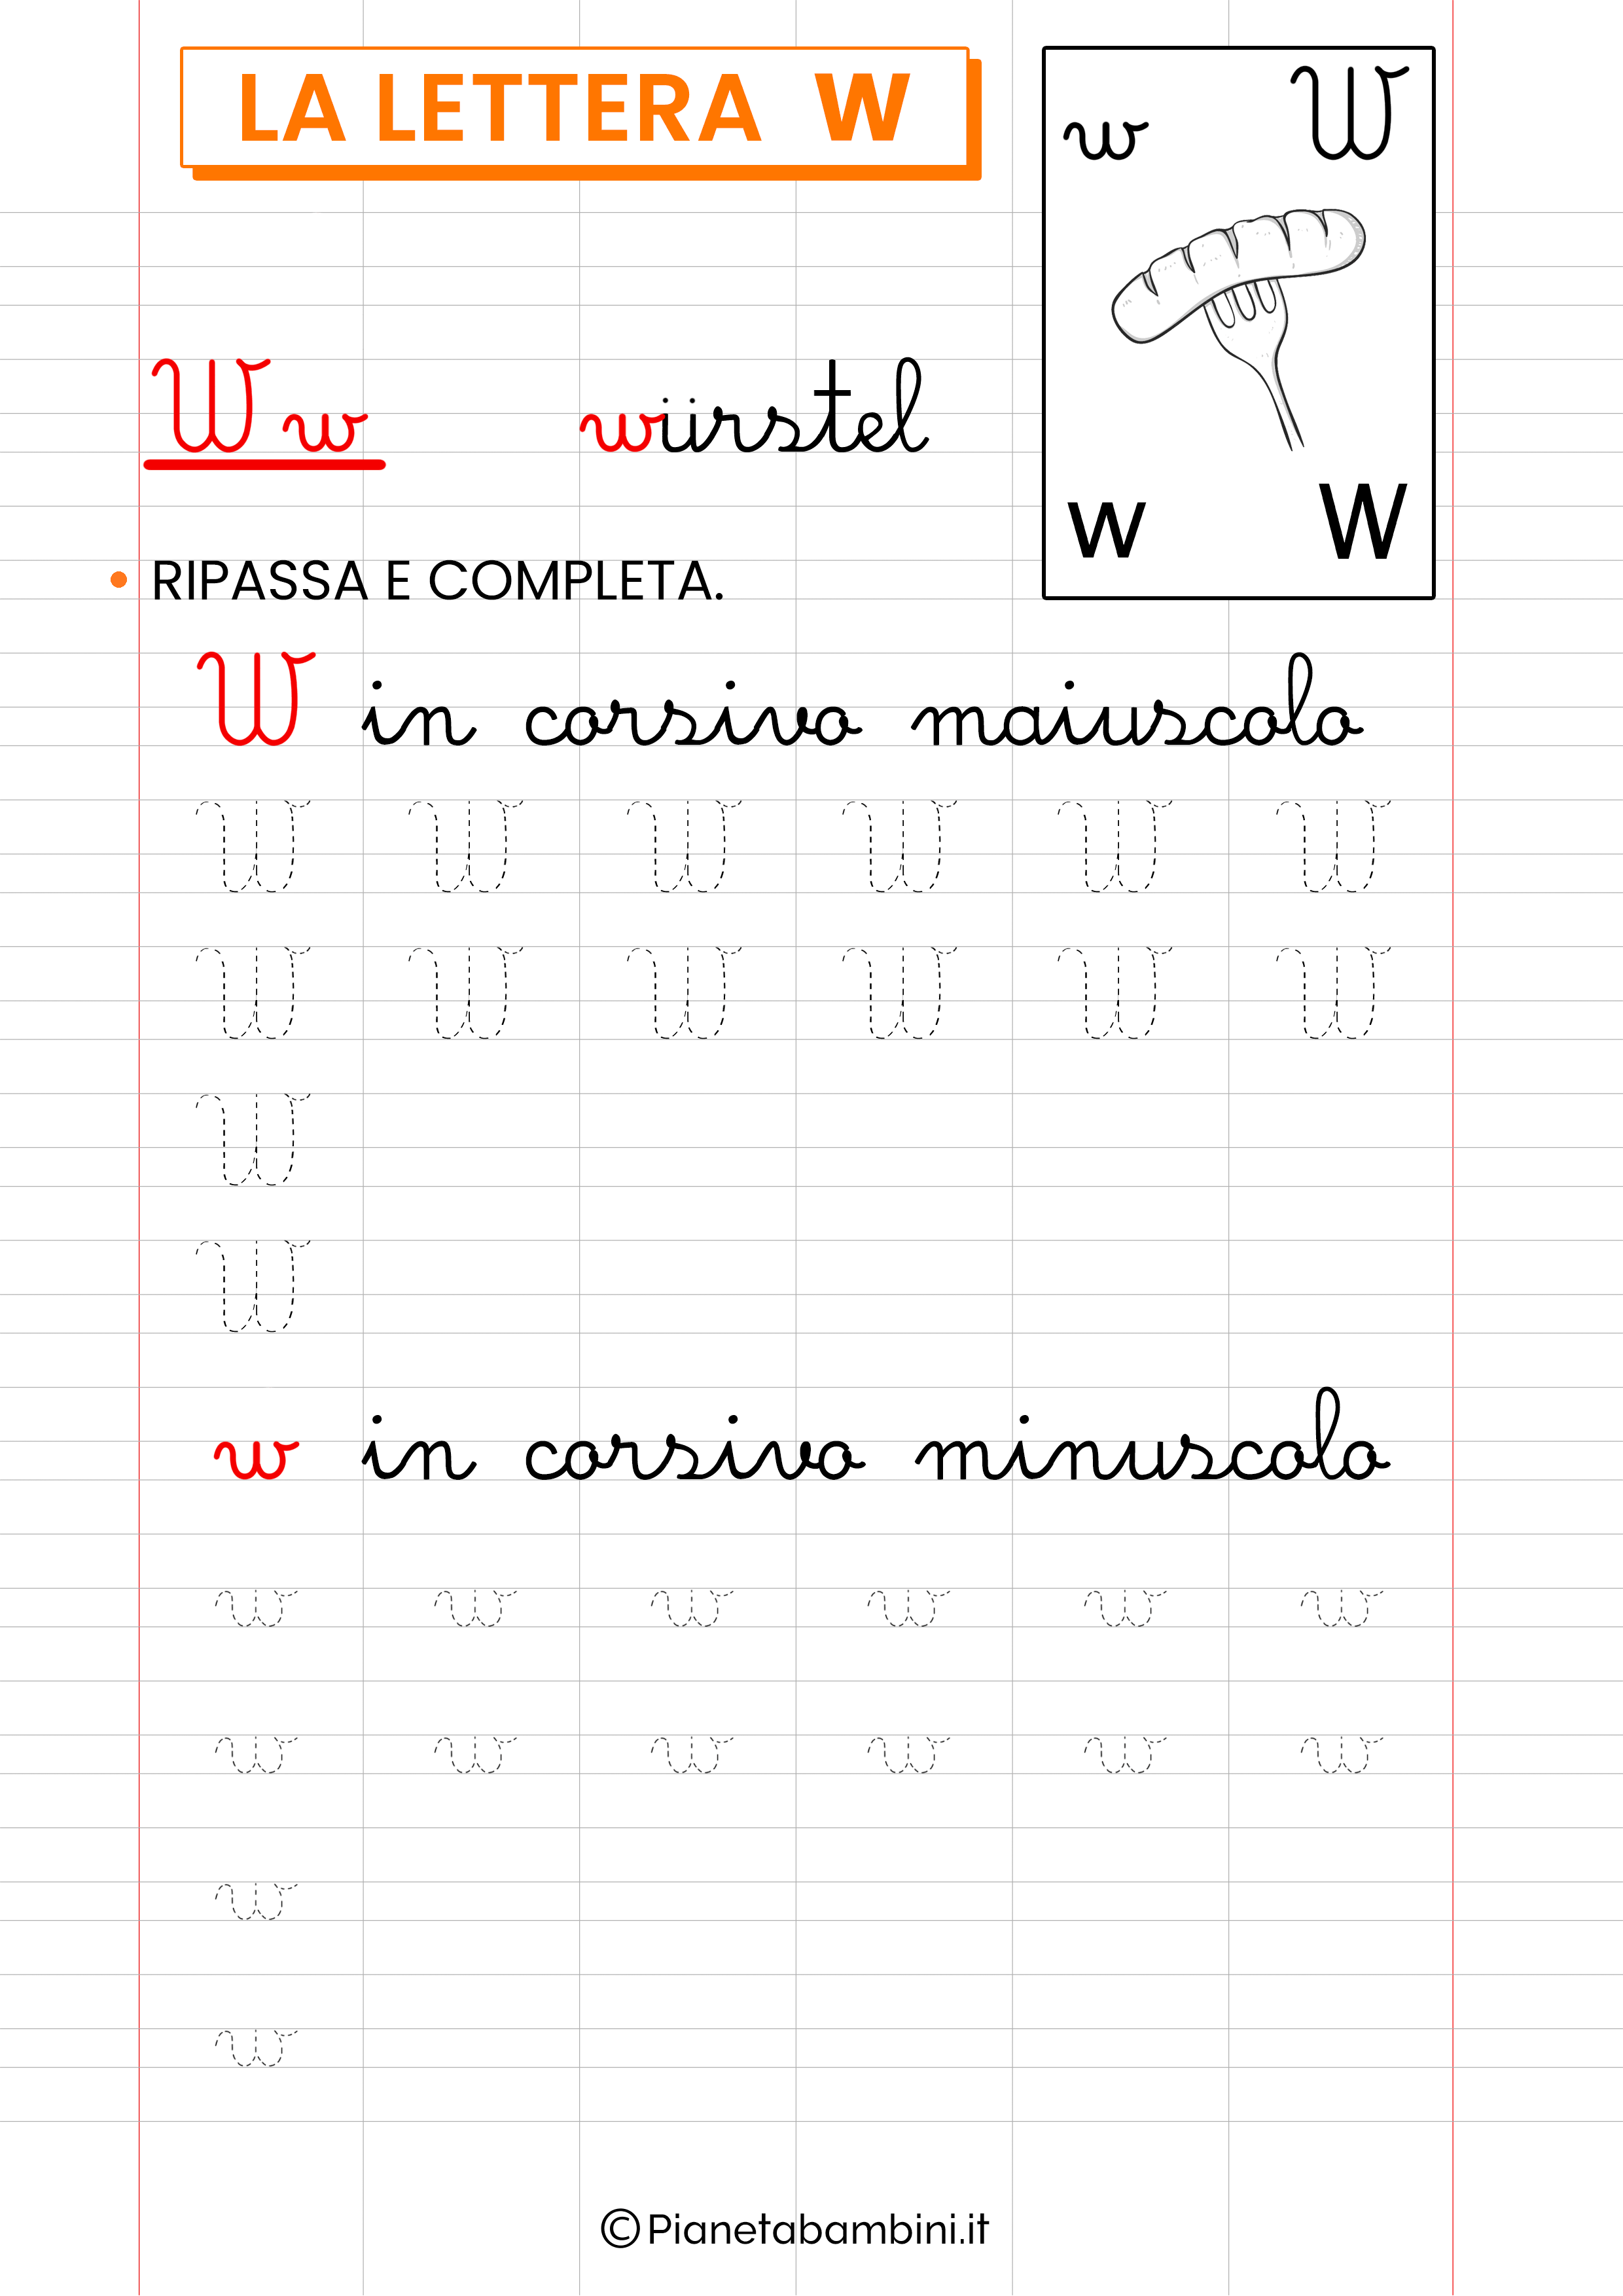 Scheda di pregrafismo sulla lettera straniera W in corsivo